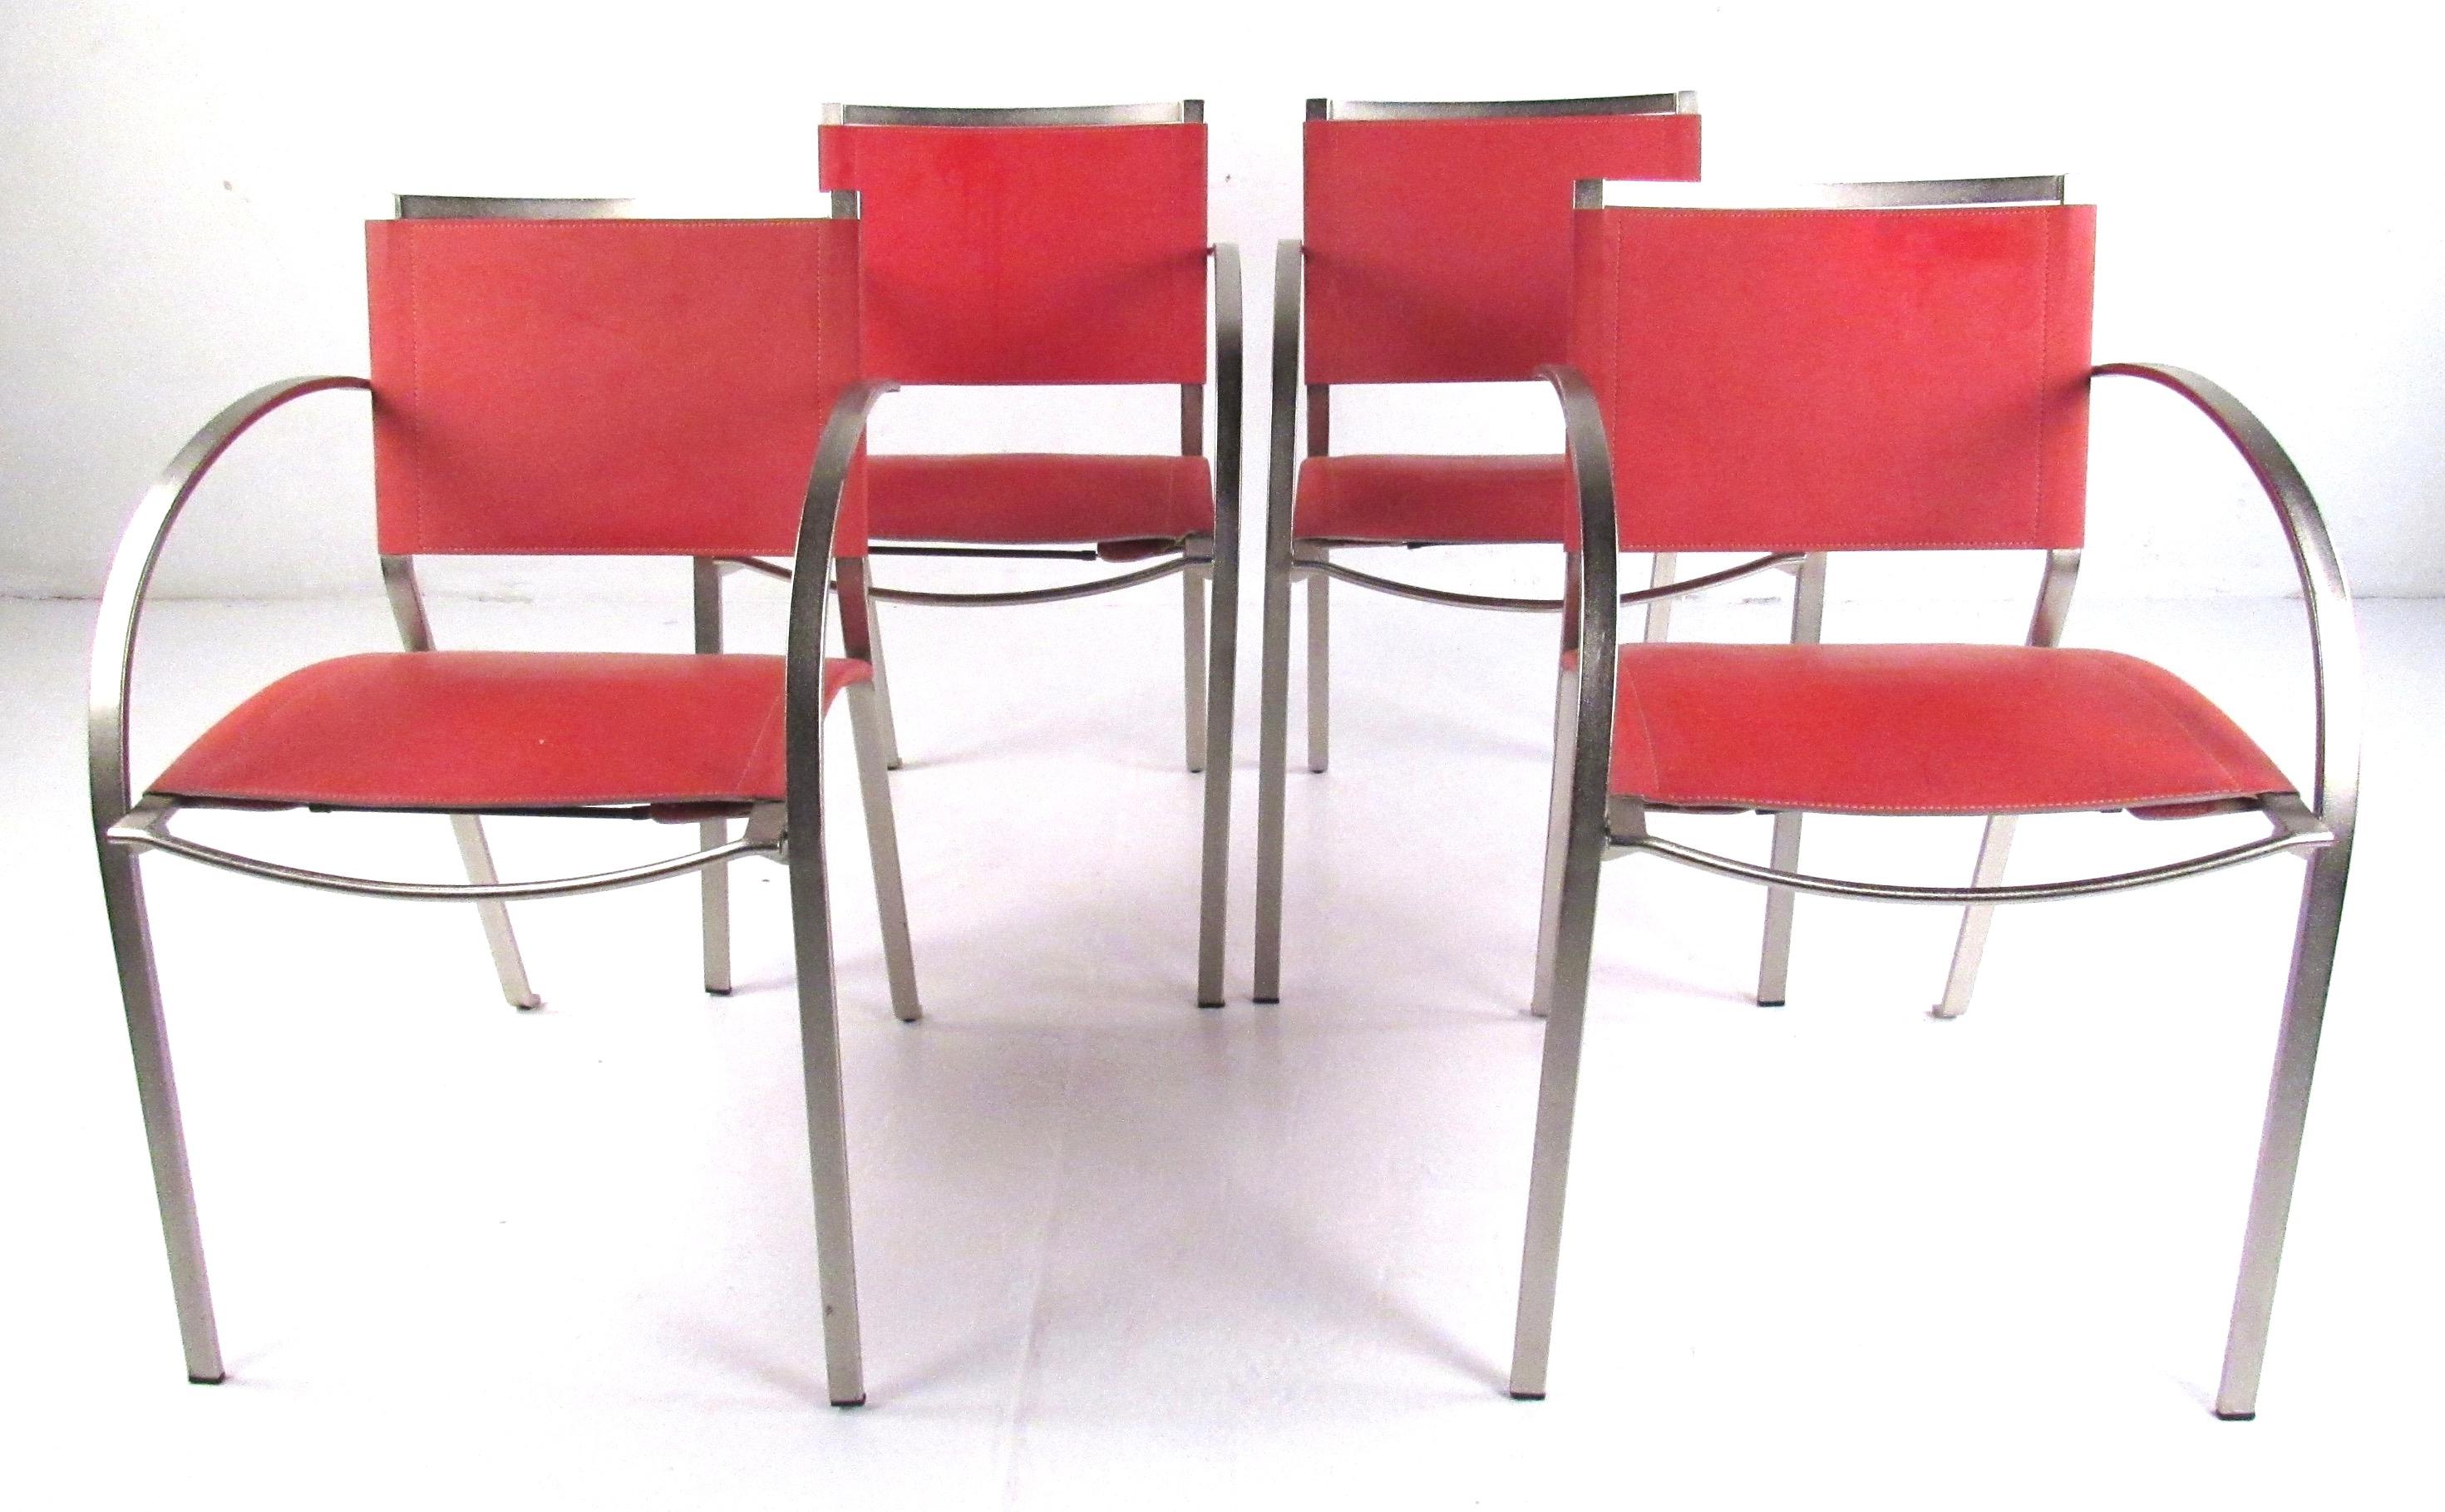 Elegantes Set aus vier Sesseln mit Leder- und Metallrahmen, die zu jeder modernen oder Midcentury-Einrichtung passen. 
Bitte bestätigen Sie den Standort des Artikels (NY oder NJ) mit dem Händler.